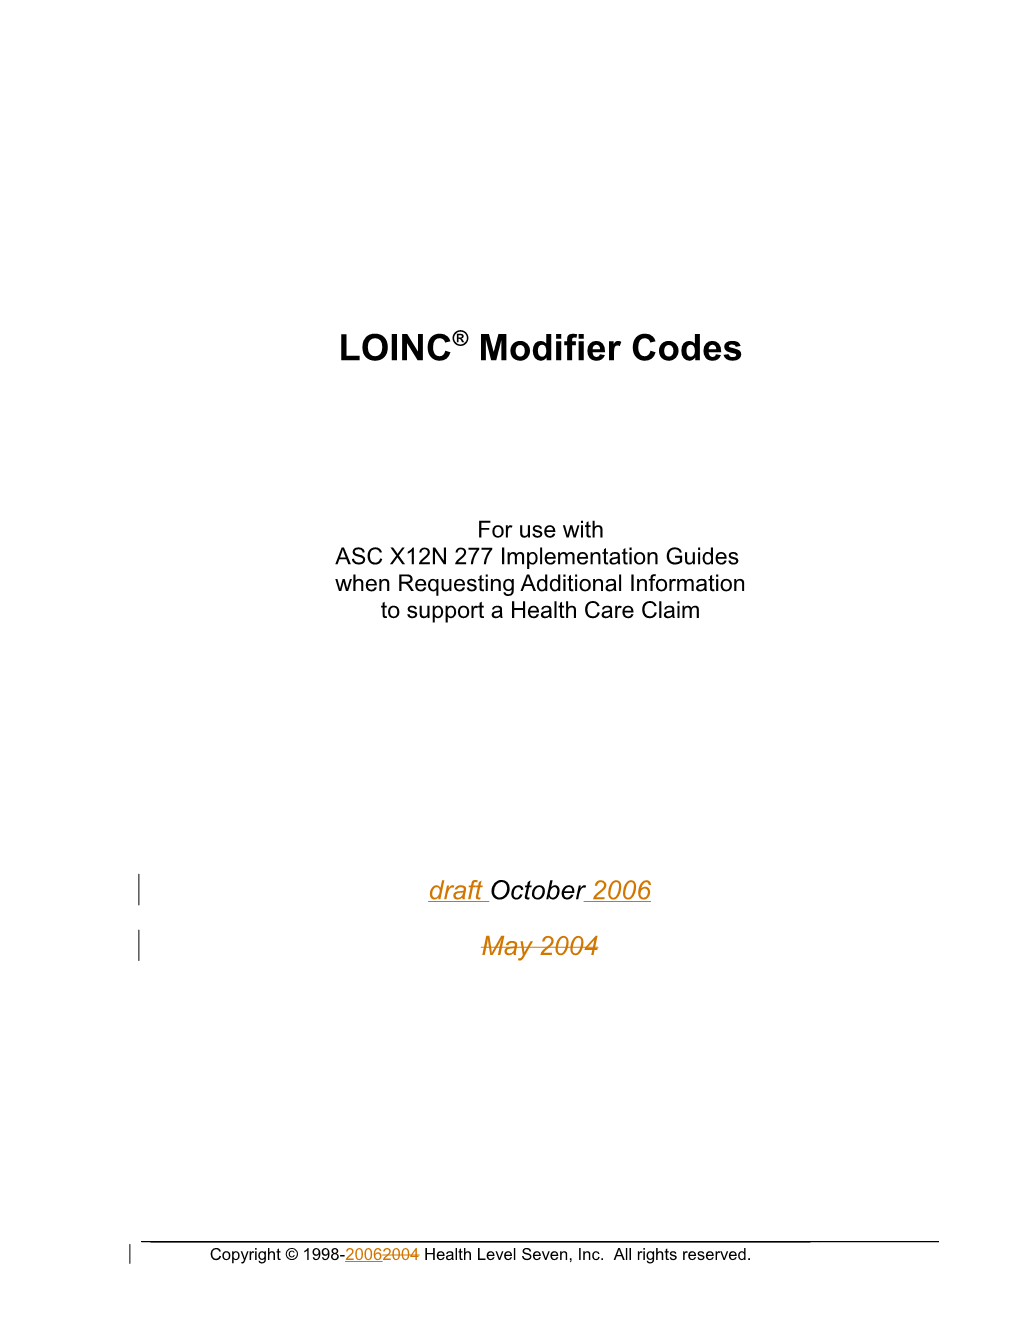 LOINC Modifier Codes